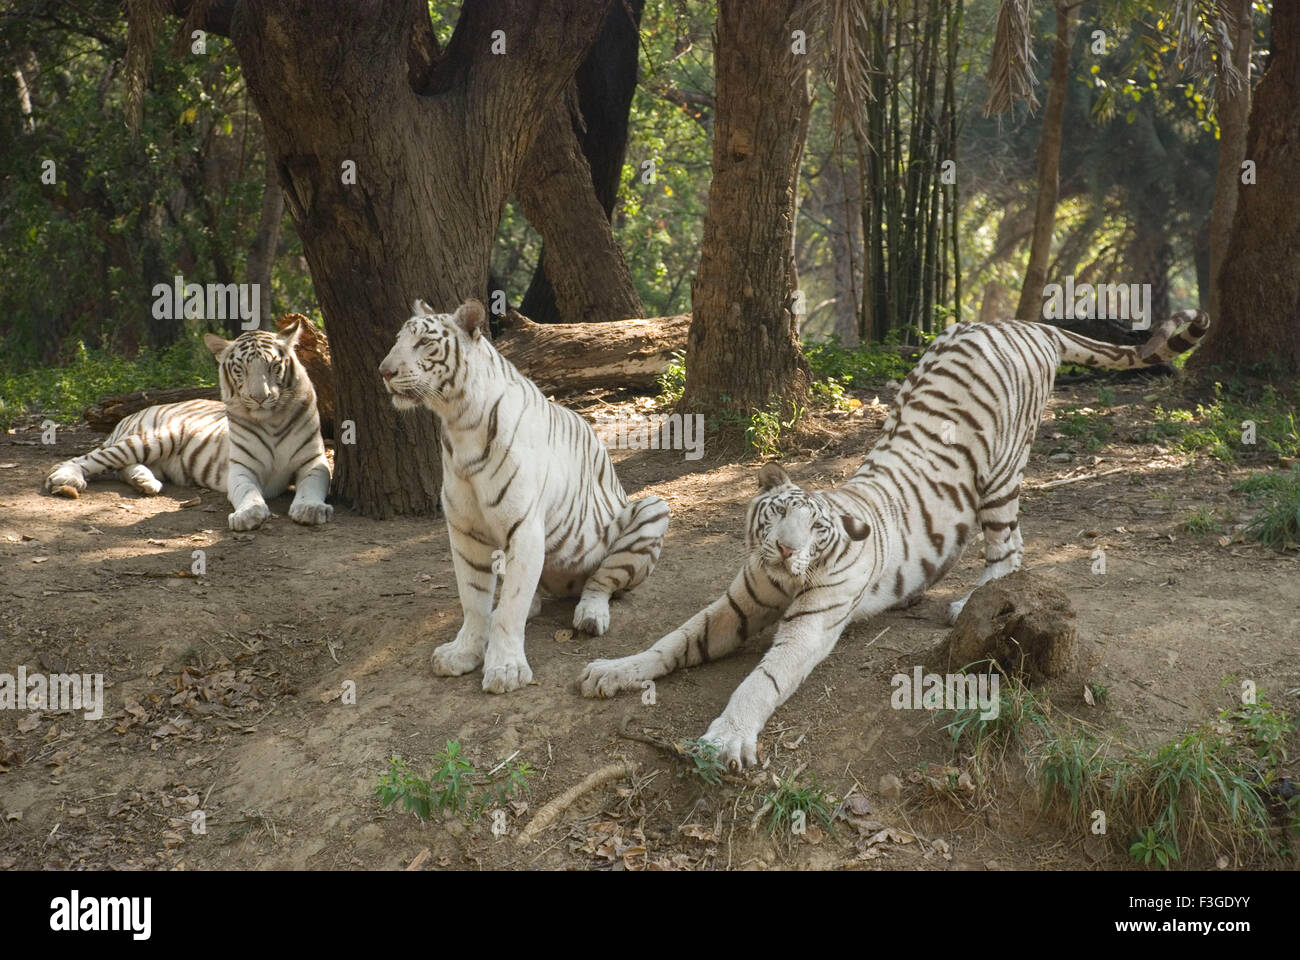 Tigre bianche, tigre sbiancate, animali, pigmentazione leucistica, tigri bengala, India, Asia Foto Stock